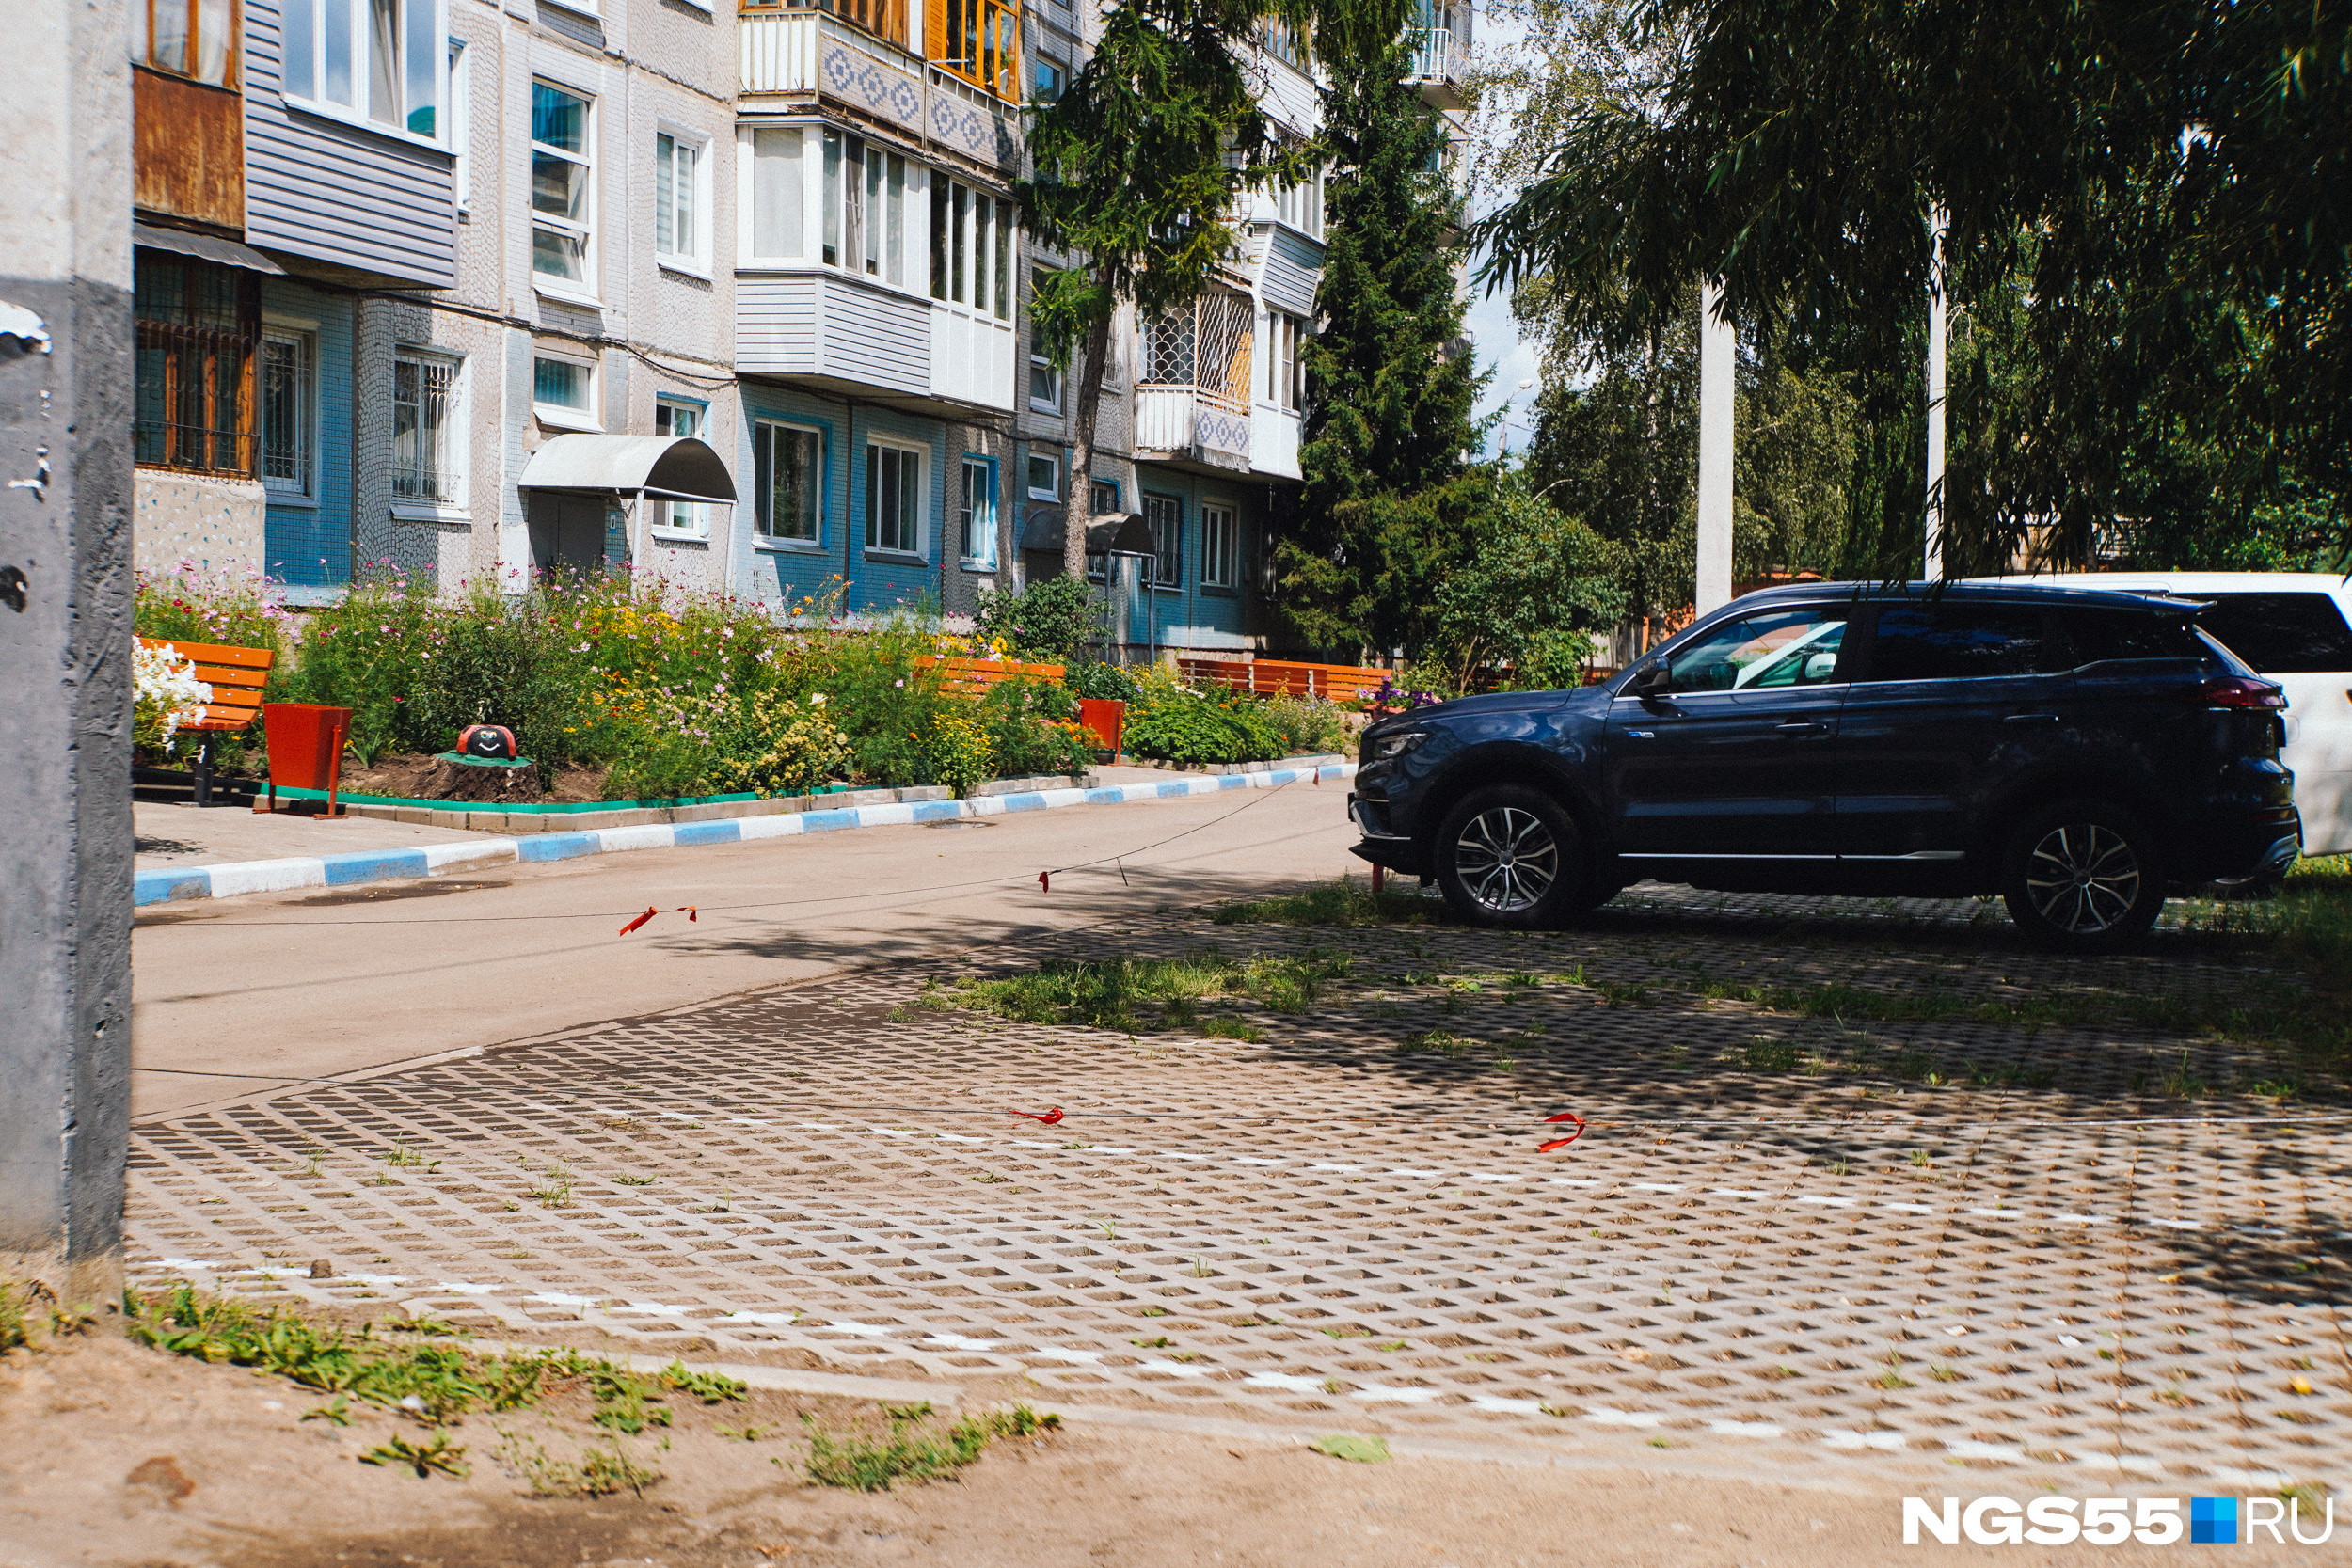 Соседний двор смог справиться с этой проблемой достаточно современным решением. Именно так устраивают парковки в зеленых старых дворах Москвы